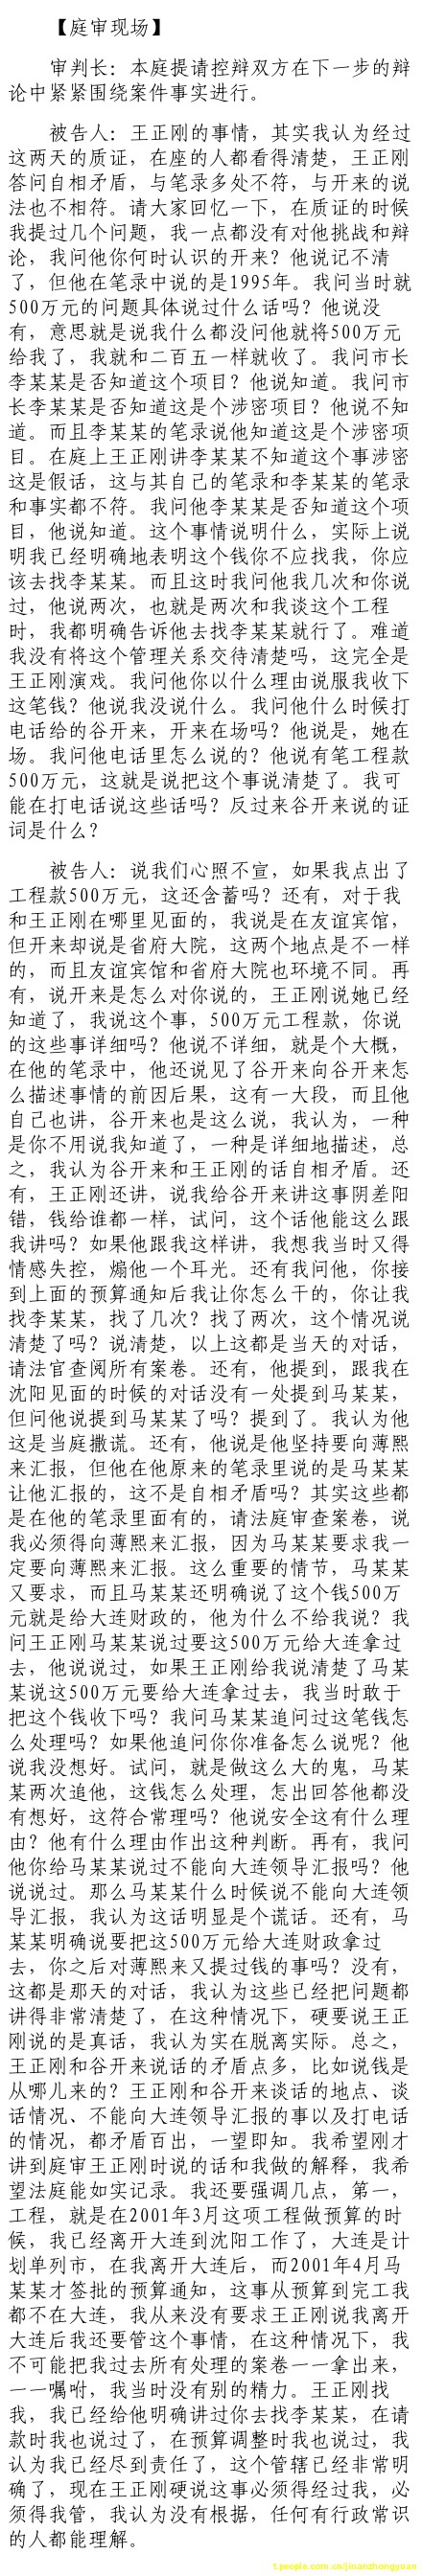 济南市中级法院官方微博公布的8月26日庭审现场记录（3）